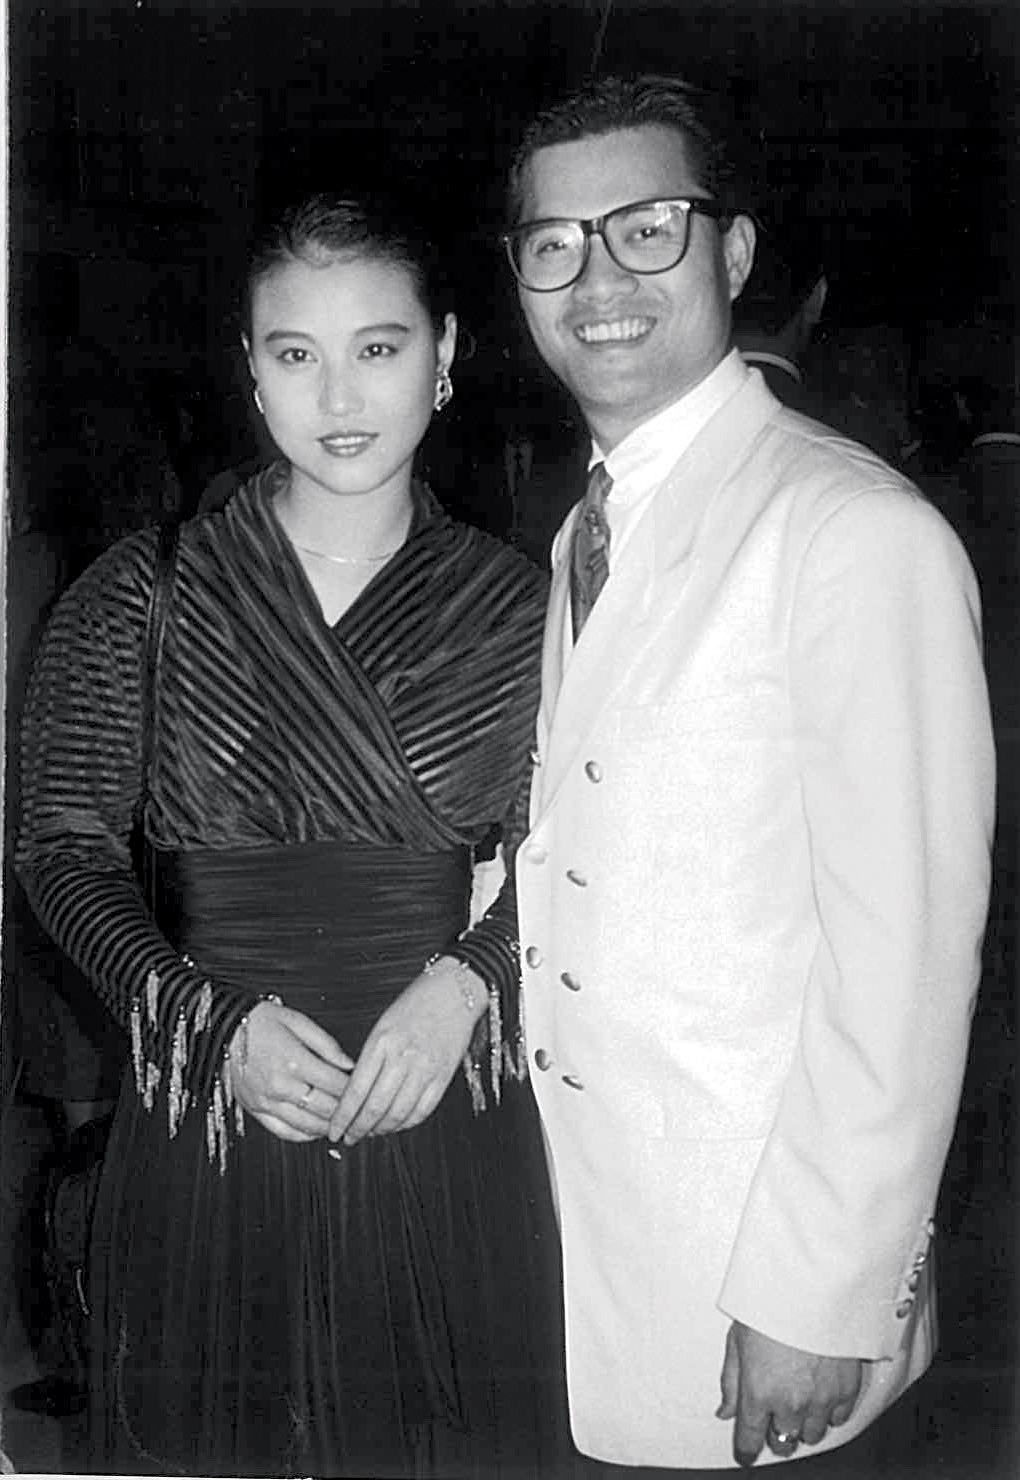 吕良伟、周海媚1986年拍《小岛风云》挞着，两年后到美国「秘婚」，不过原来当年吕良伟搞乌龙，两人只有登记，并未正式注册结婚。